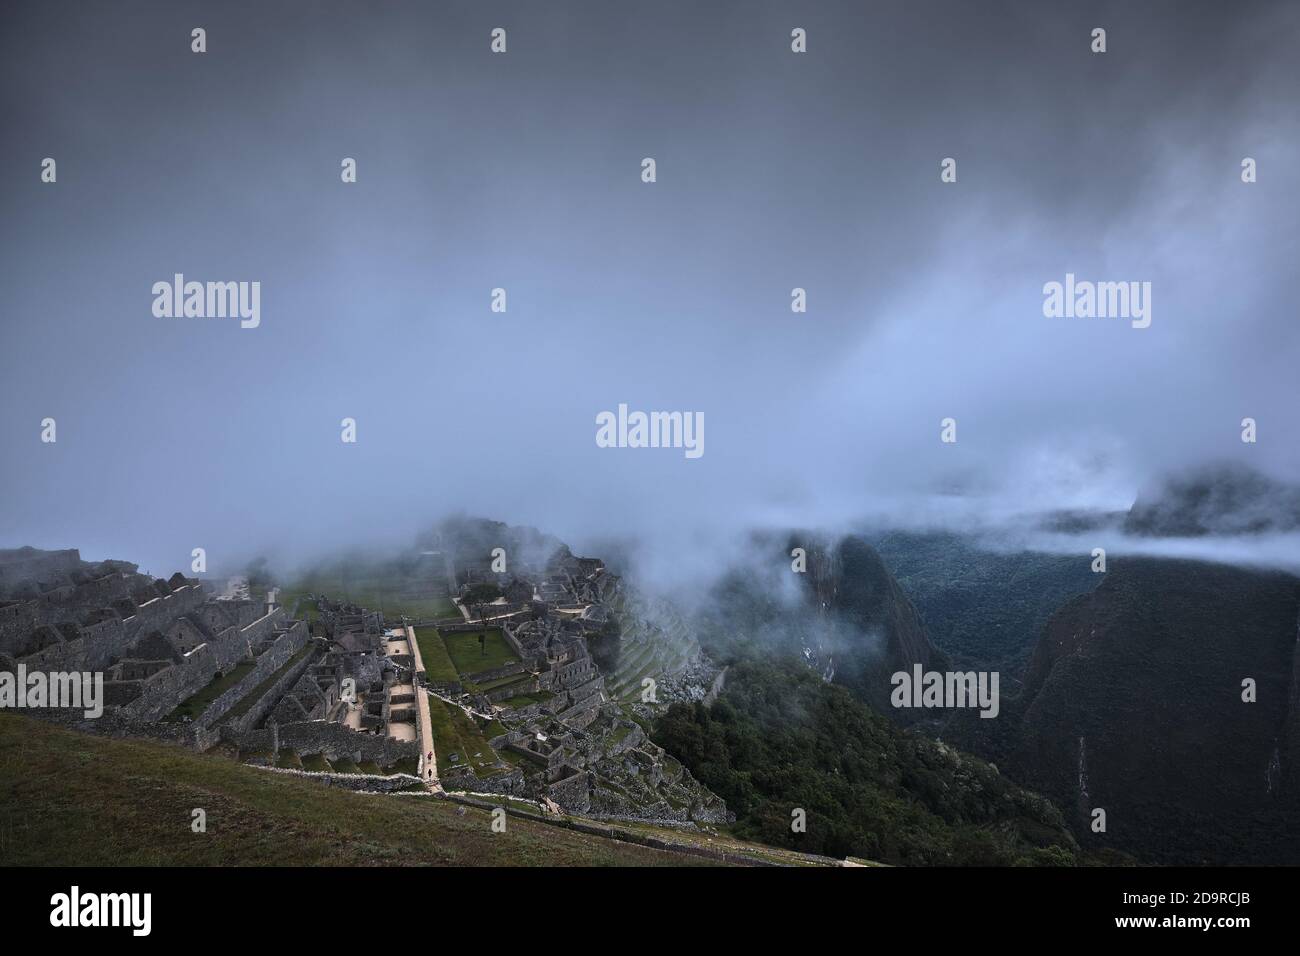 Sunrise dawn: Mist and low cloud over the ruins at Machu Picchu, Peru Stock Photo